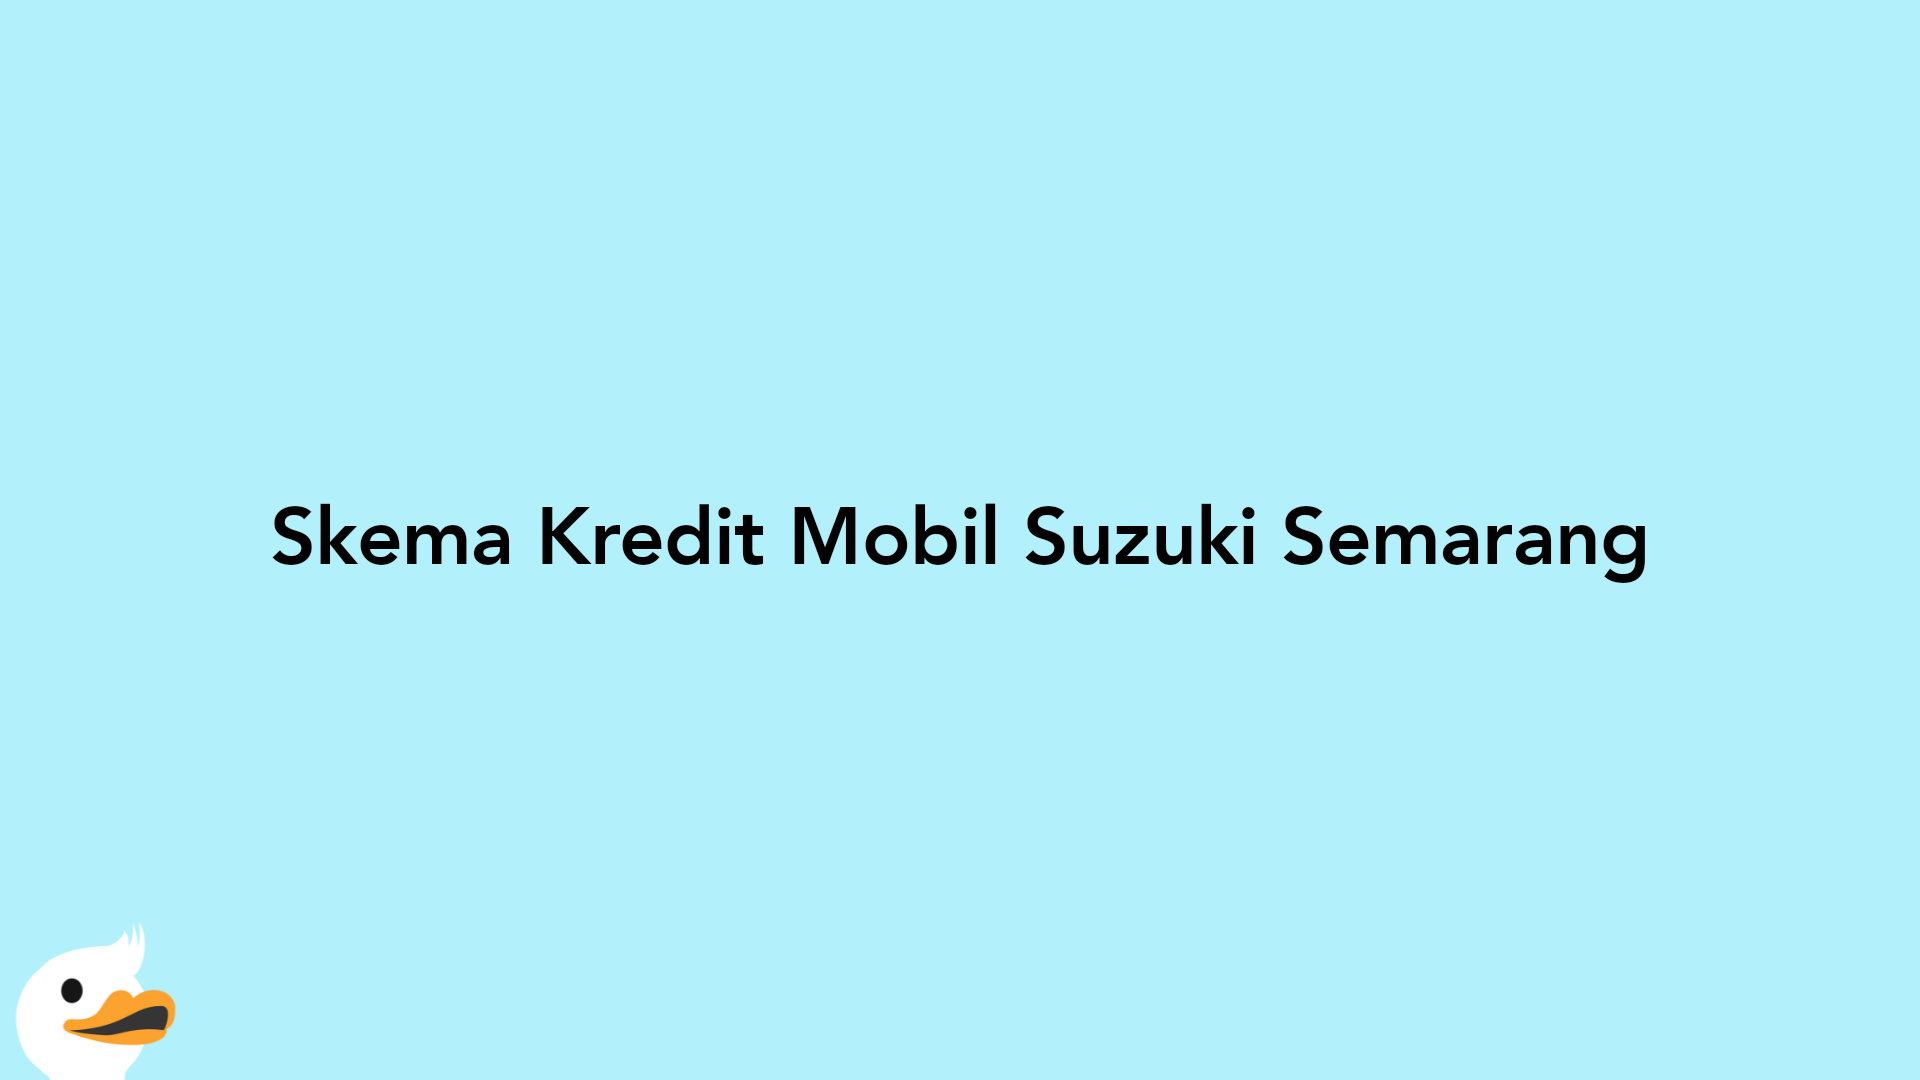 Skema Kredit Mobil Suzuki Semarang